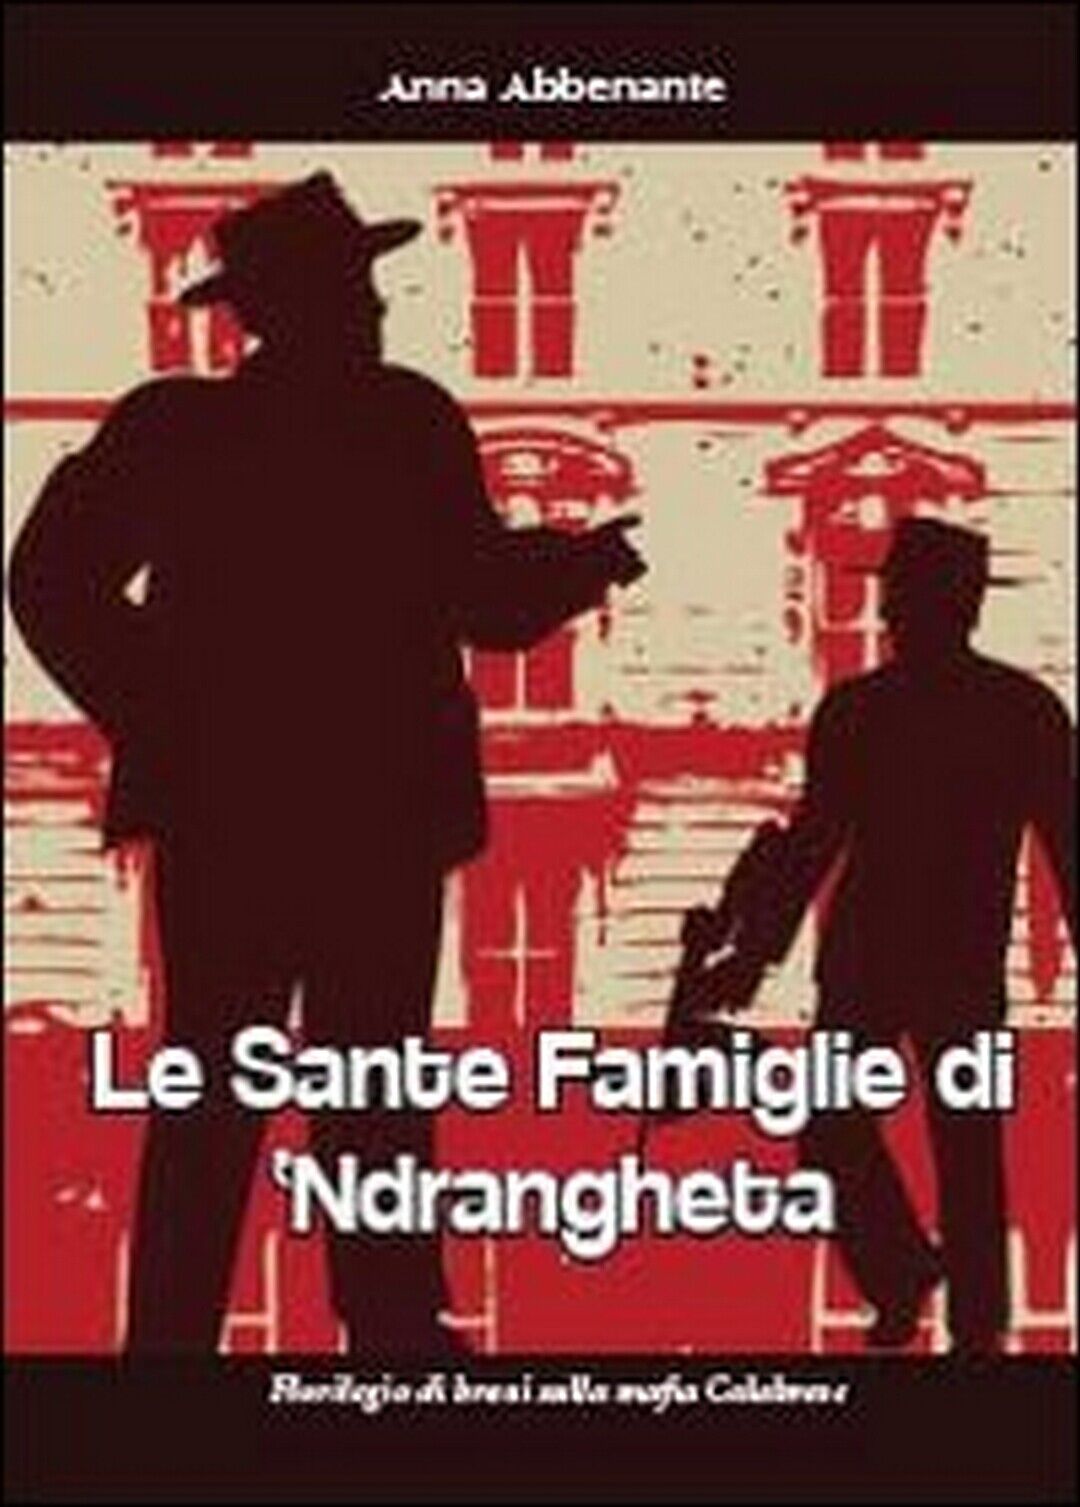 Le sante famiglie di ?ndrangheta,  di Anna Abbenante,  2013,  Youcanprint libro usato